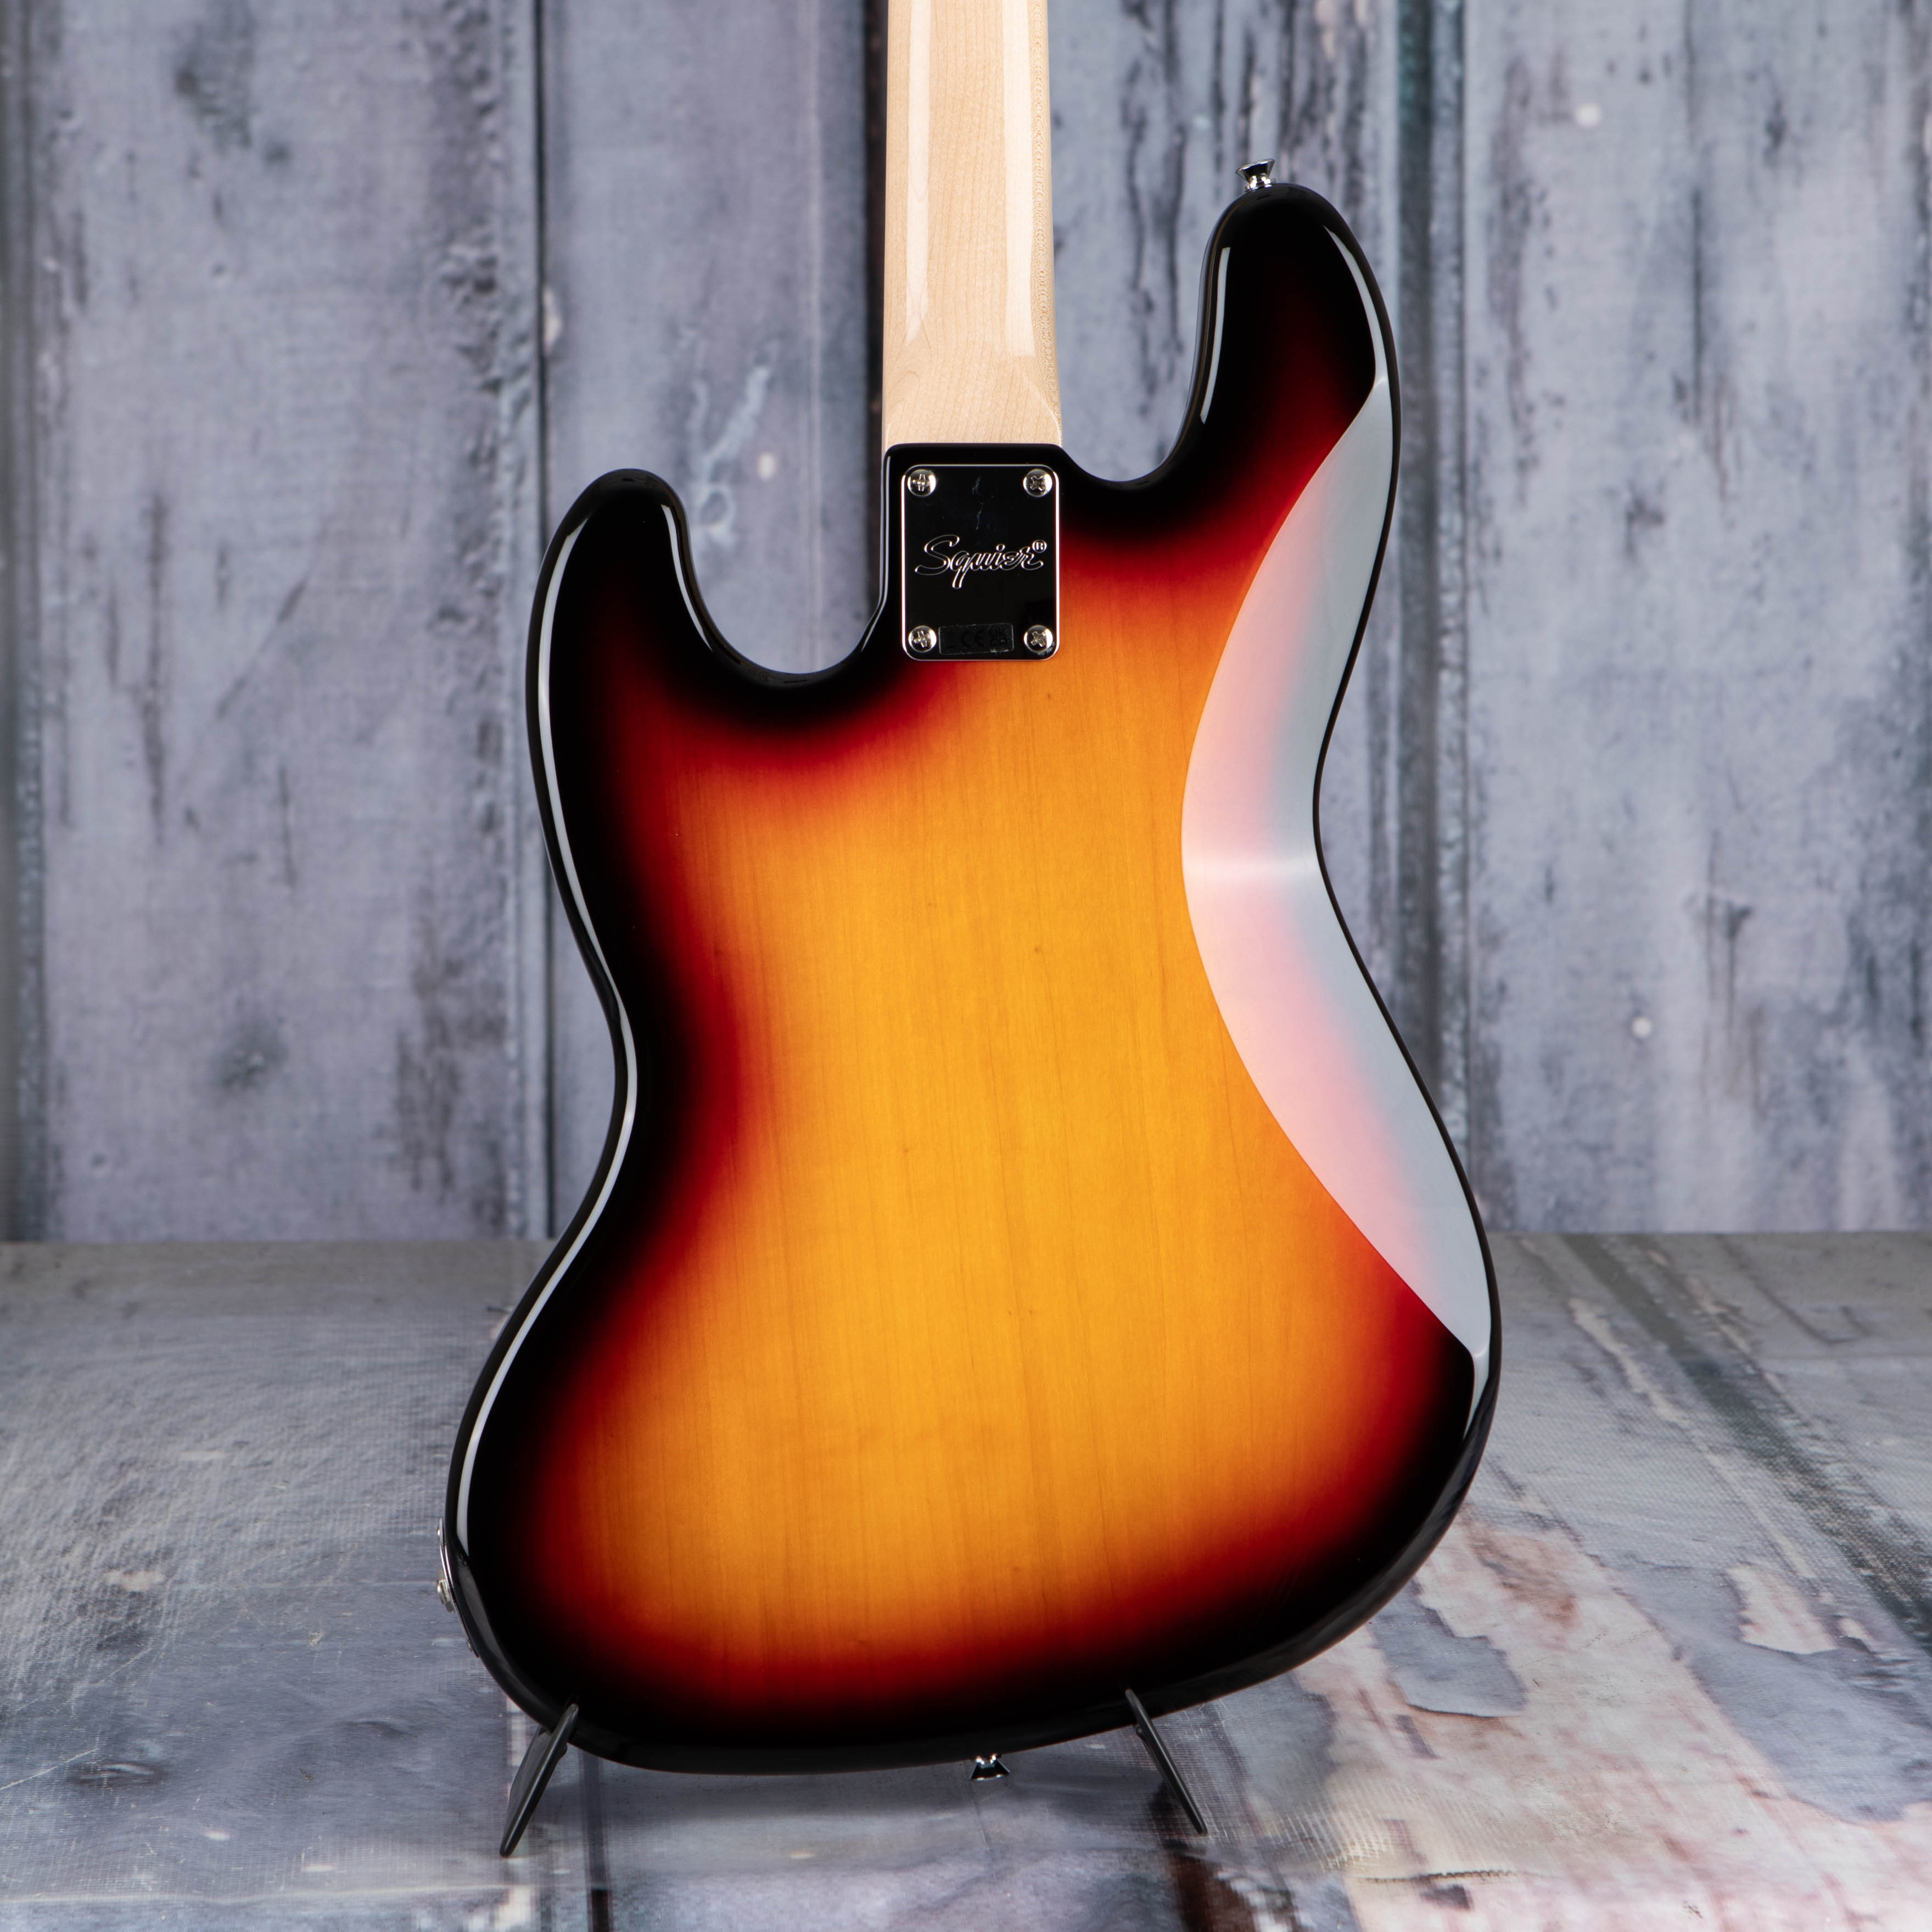 Squier Paranormal Jazz Bass '54 Bass Guitar, 3-Color Sunburst, back closeup